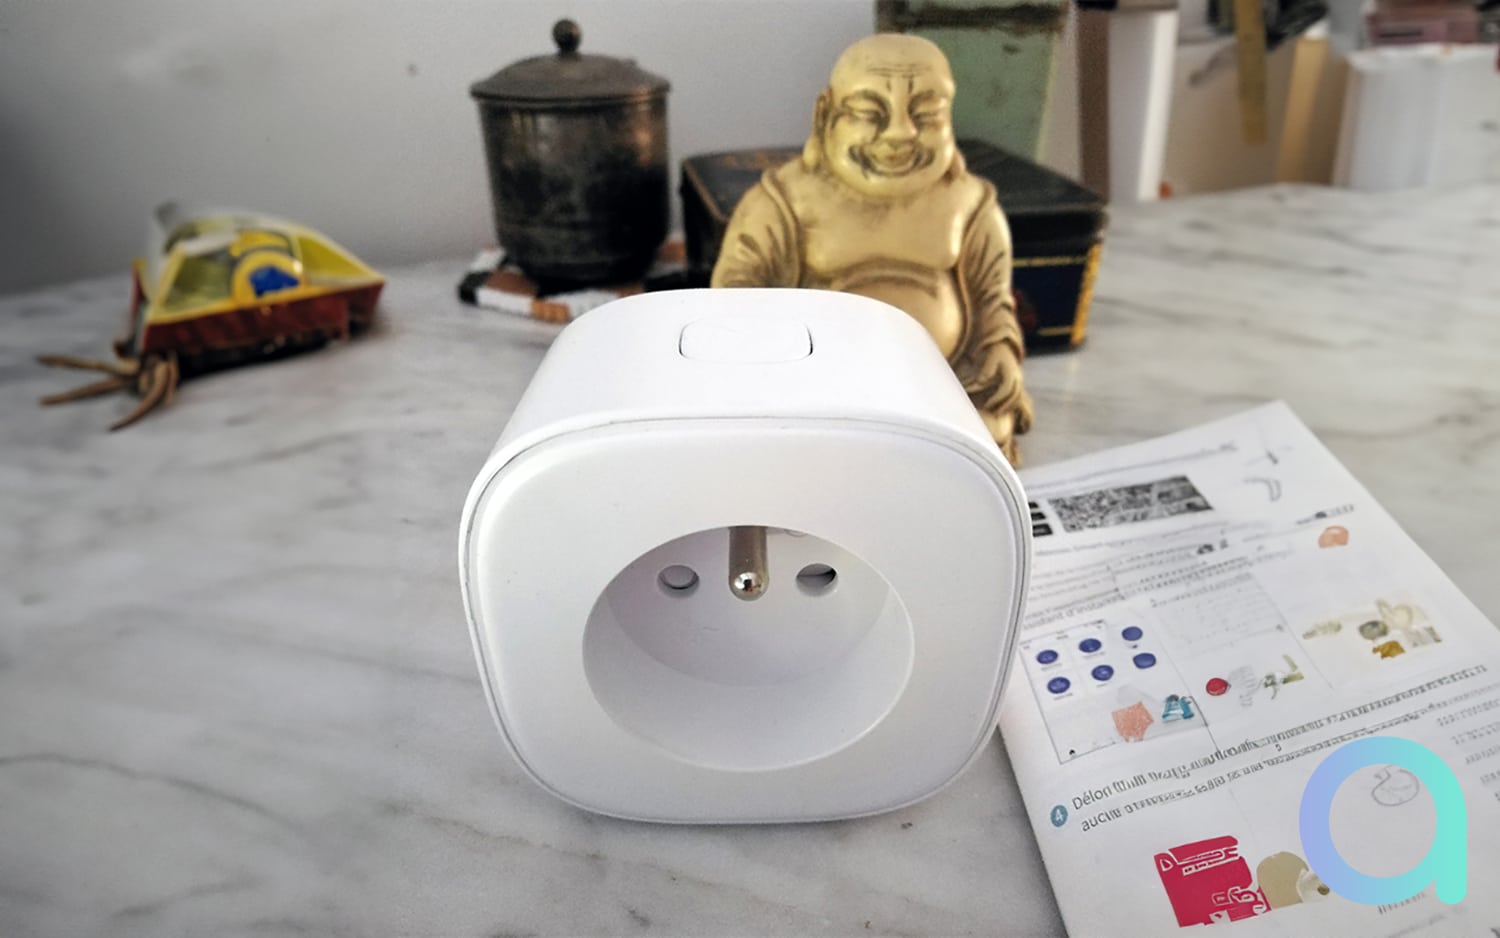 Meross dévoile une étrange prise connectée avec thermostat – Les Alexiens